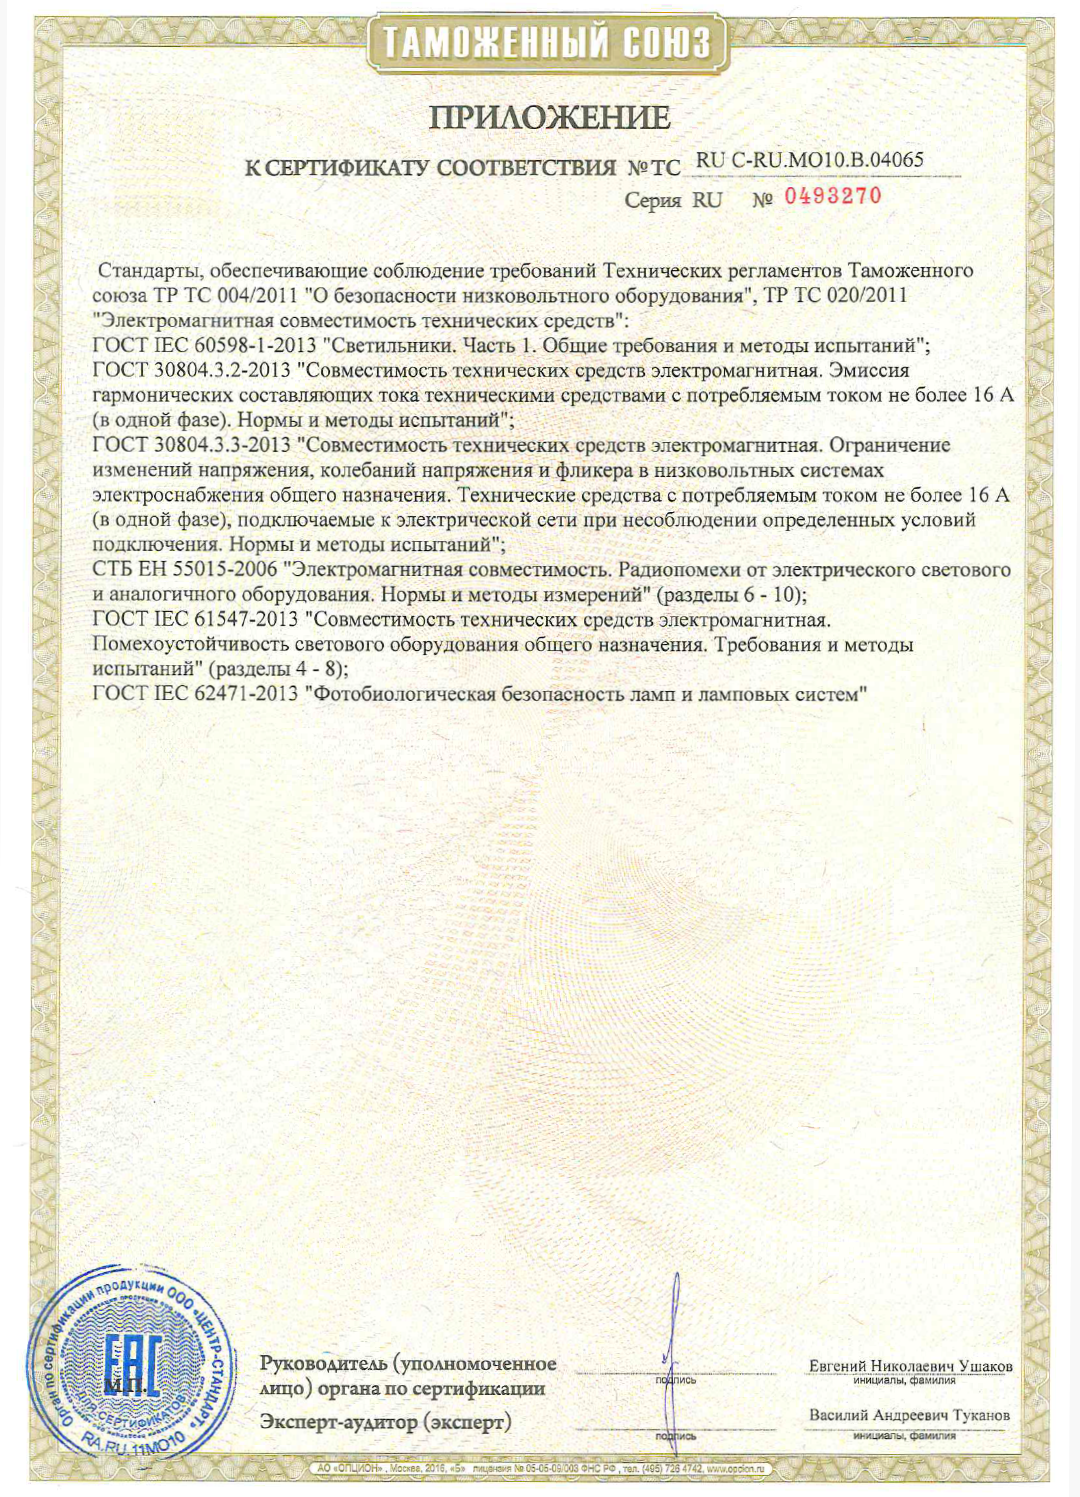 Сертификат соответствия Таможенного союза на светильники СПВО. Приложение